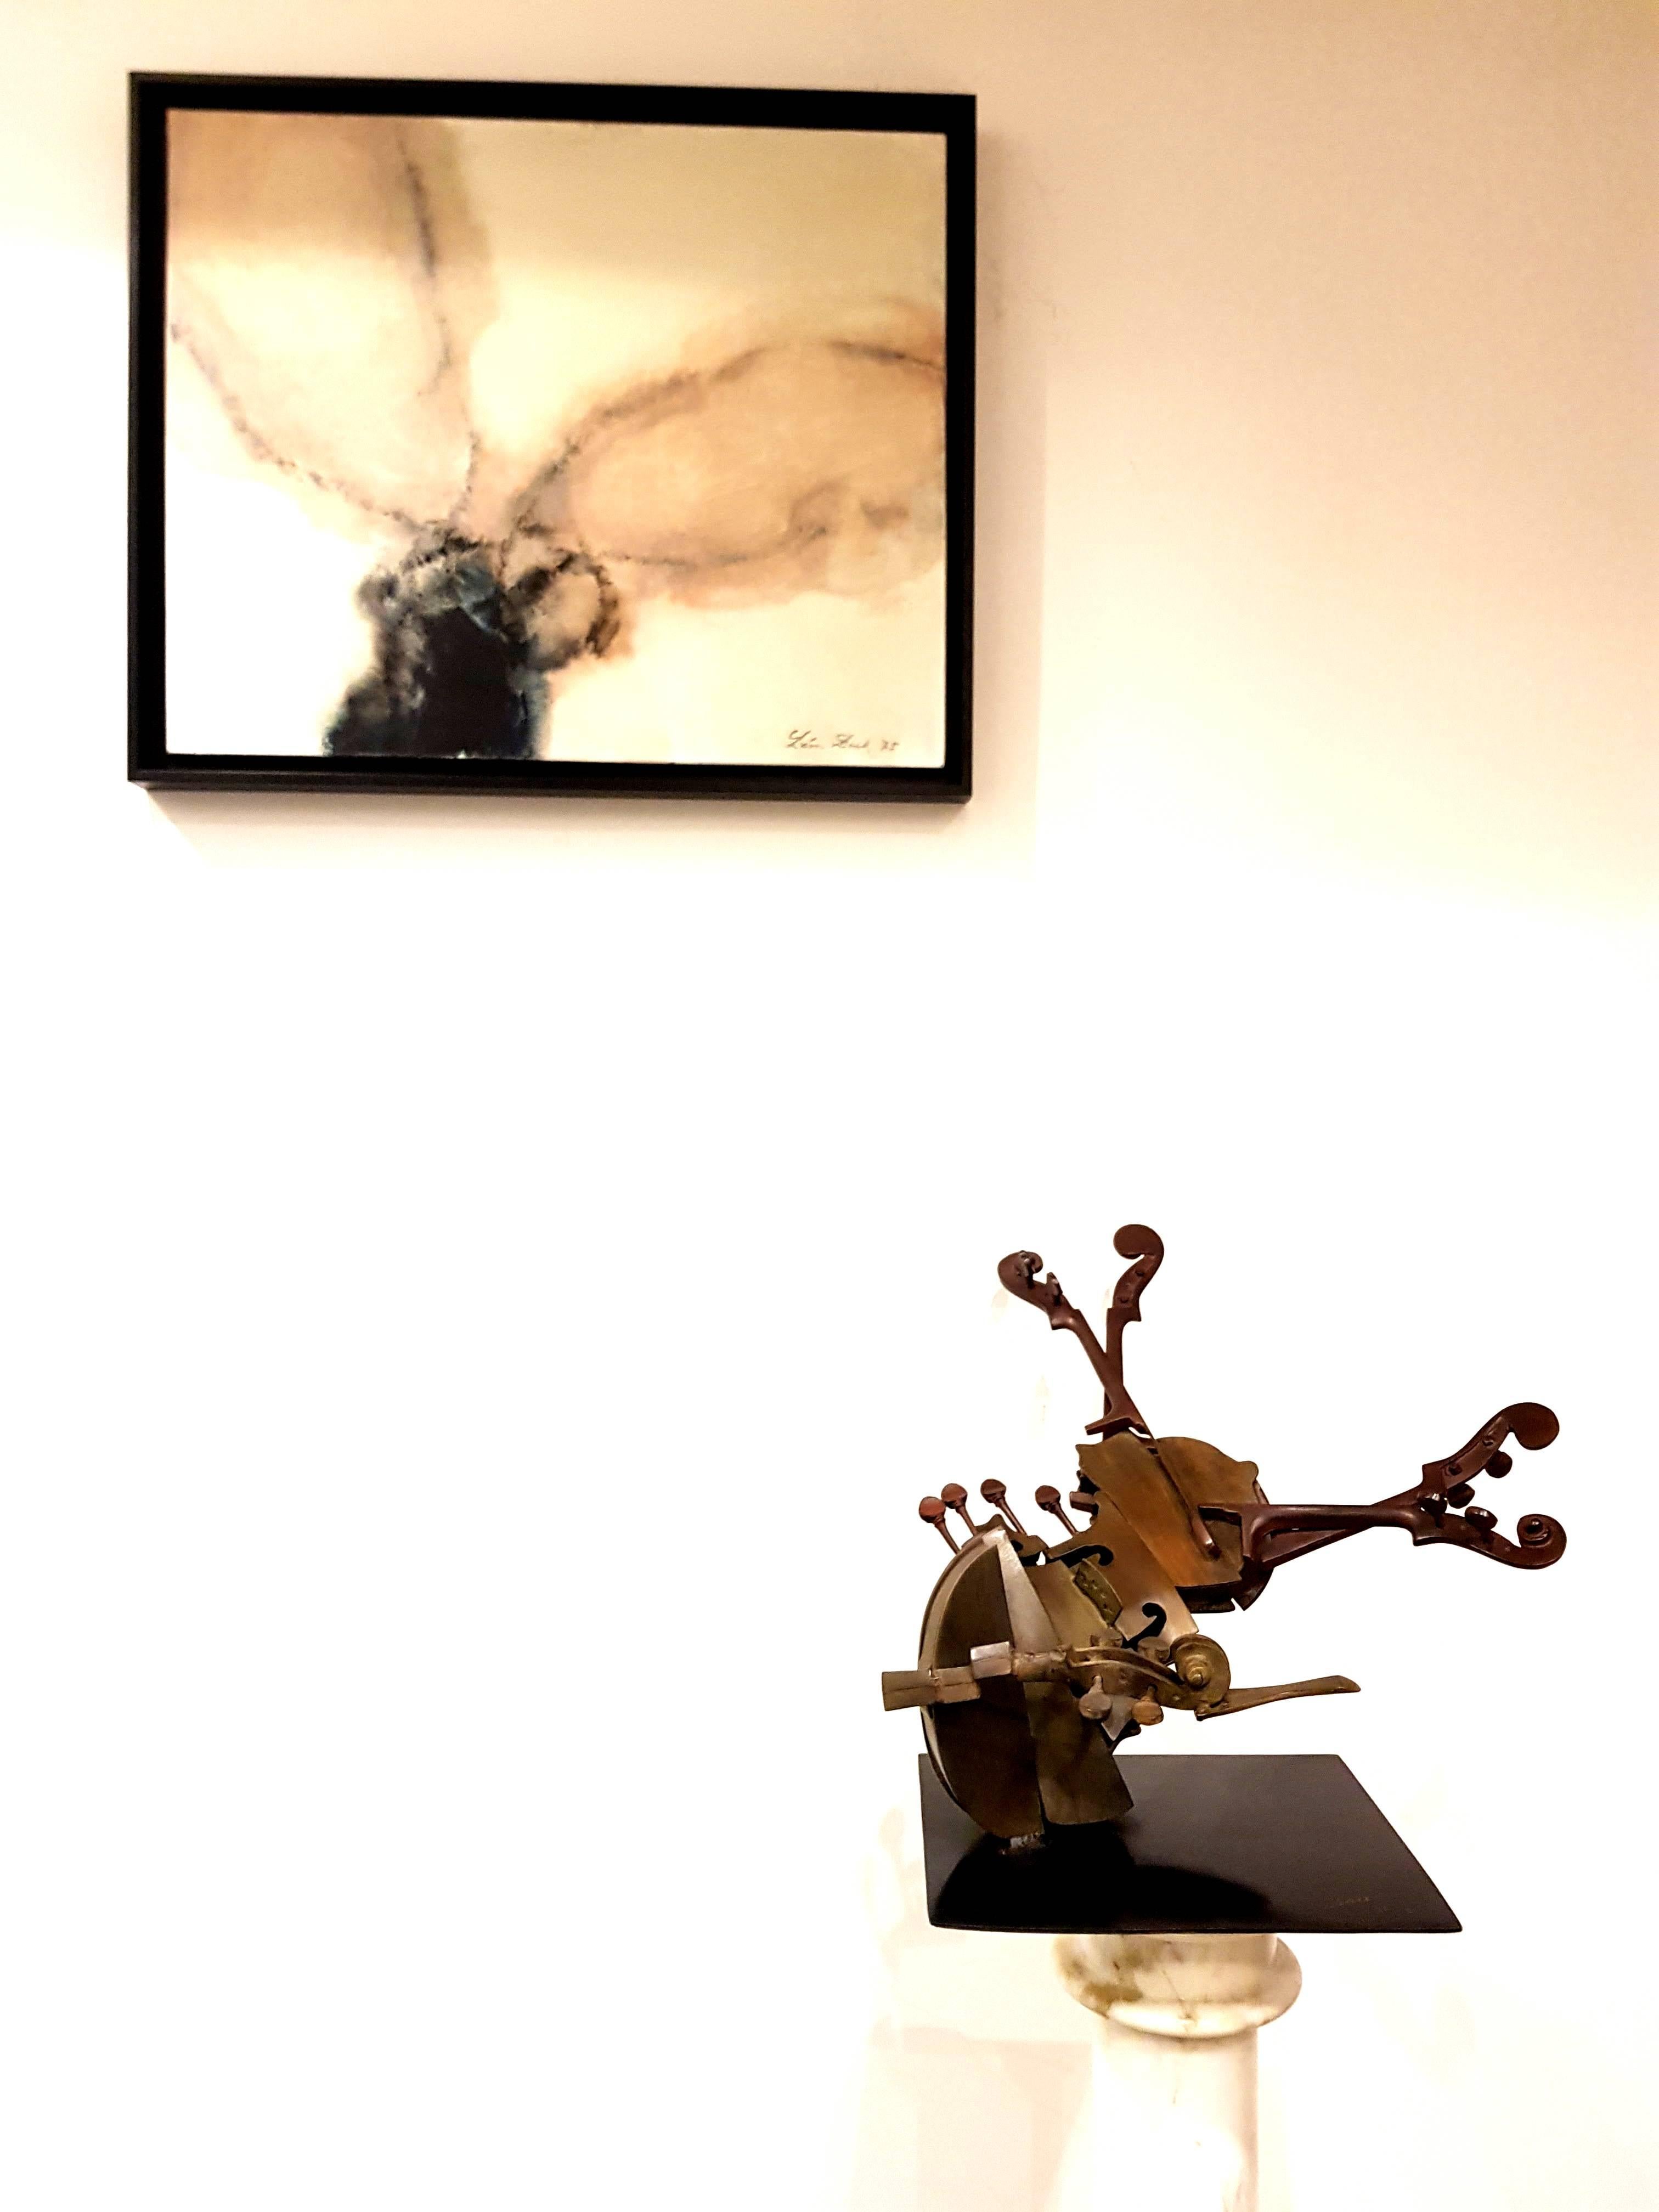 Arman
Sculpture originale en bronze pour violon
Édition : HC 1/2
Signé et numéroté
Bronze
Dimensions : 36 x 50 x 24 cm : 36 x 50 x 24 cm

Arman est un peintre qui est passé de l'utilisation d'objets pour les traces d'encre ou de peinture qu'ils